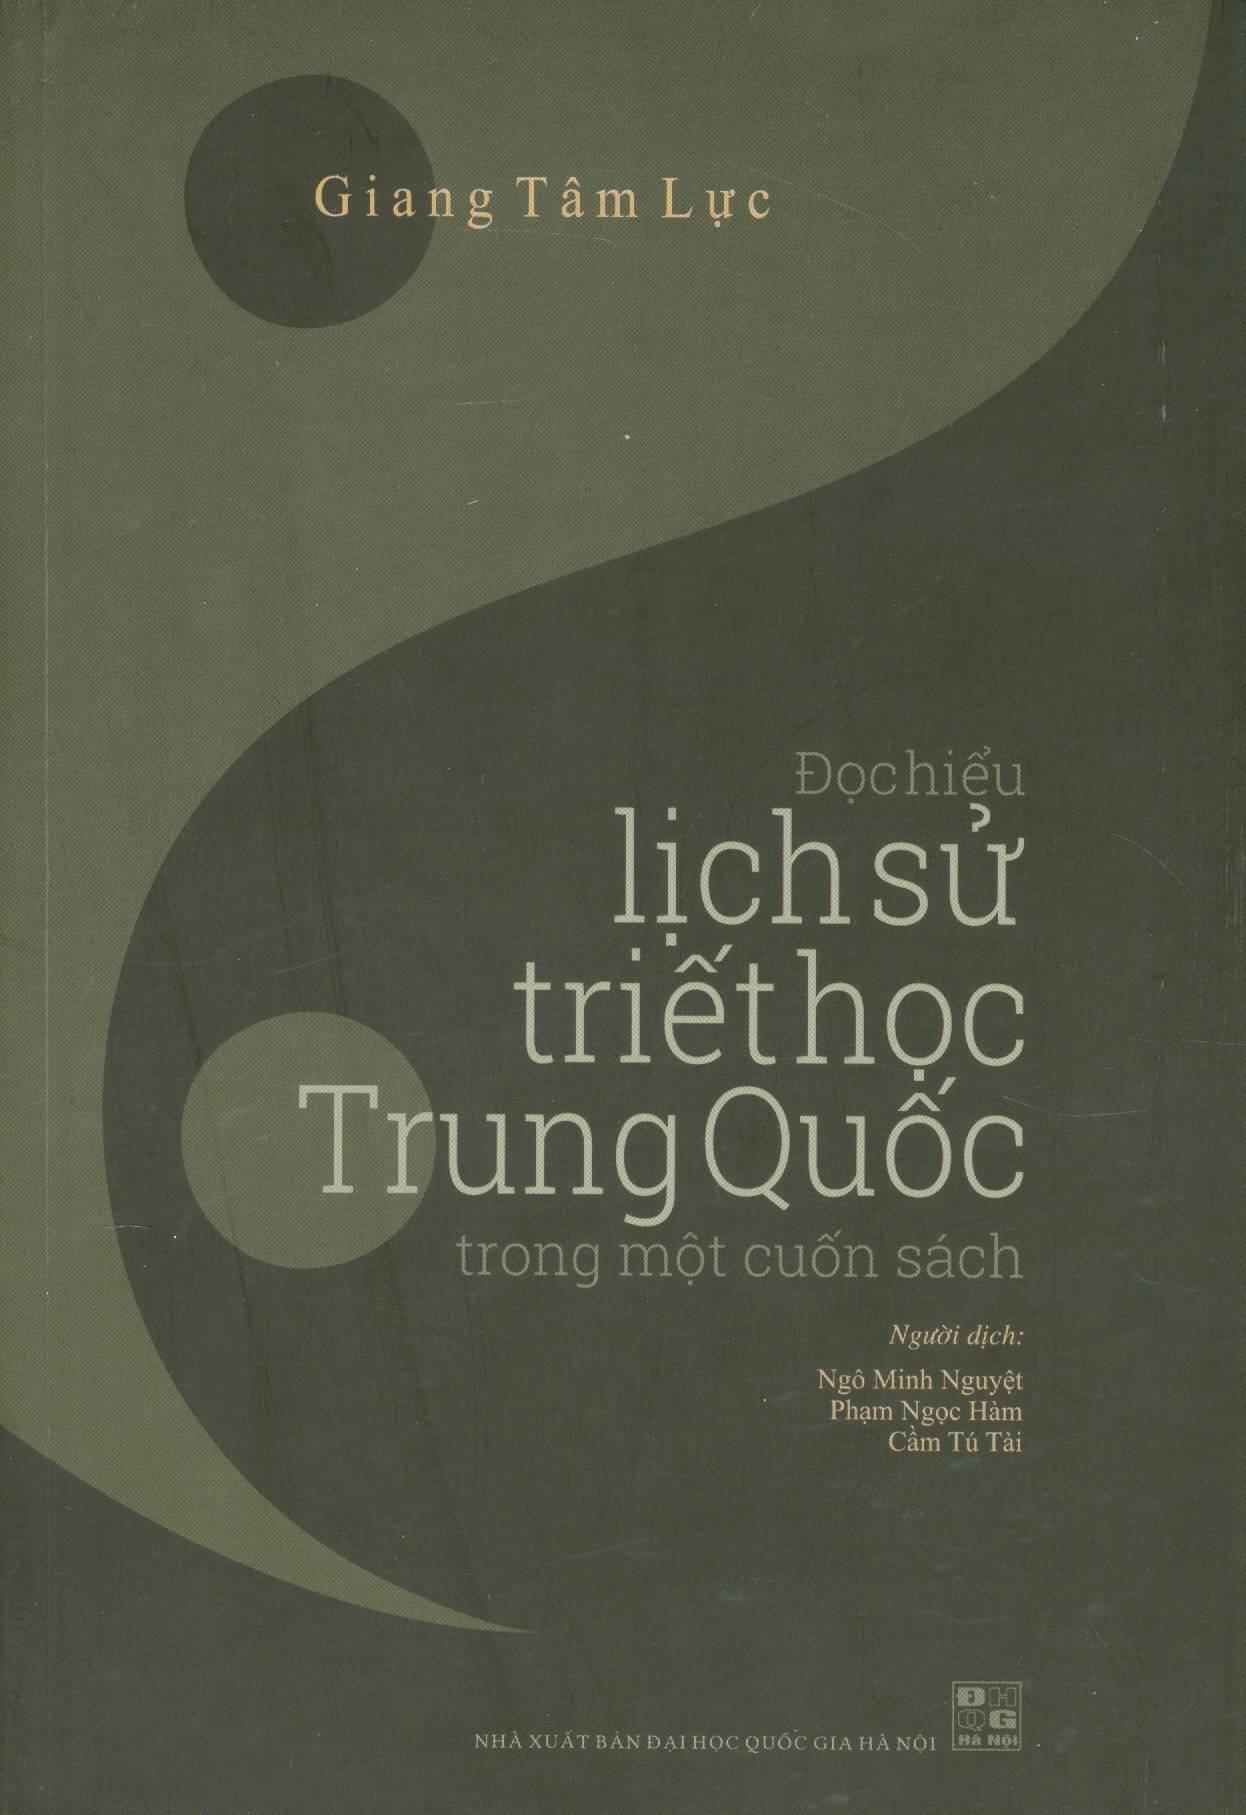 Đọc Hiểu Lịch Sử Triết Học Trung Quốc Trong Một Cuốn Sách (Bìa cứng)